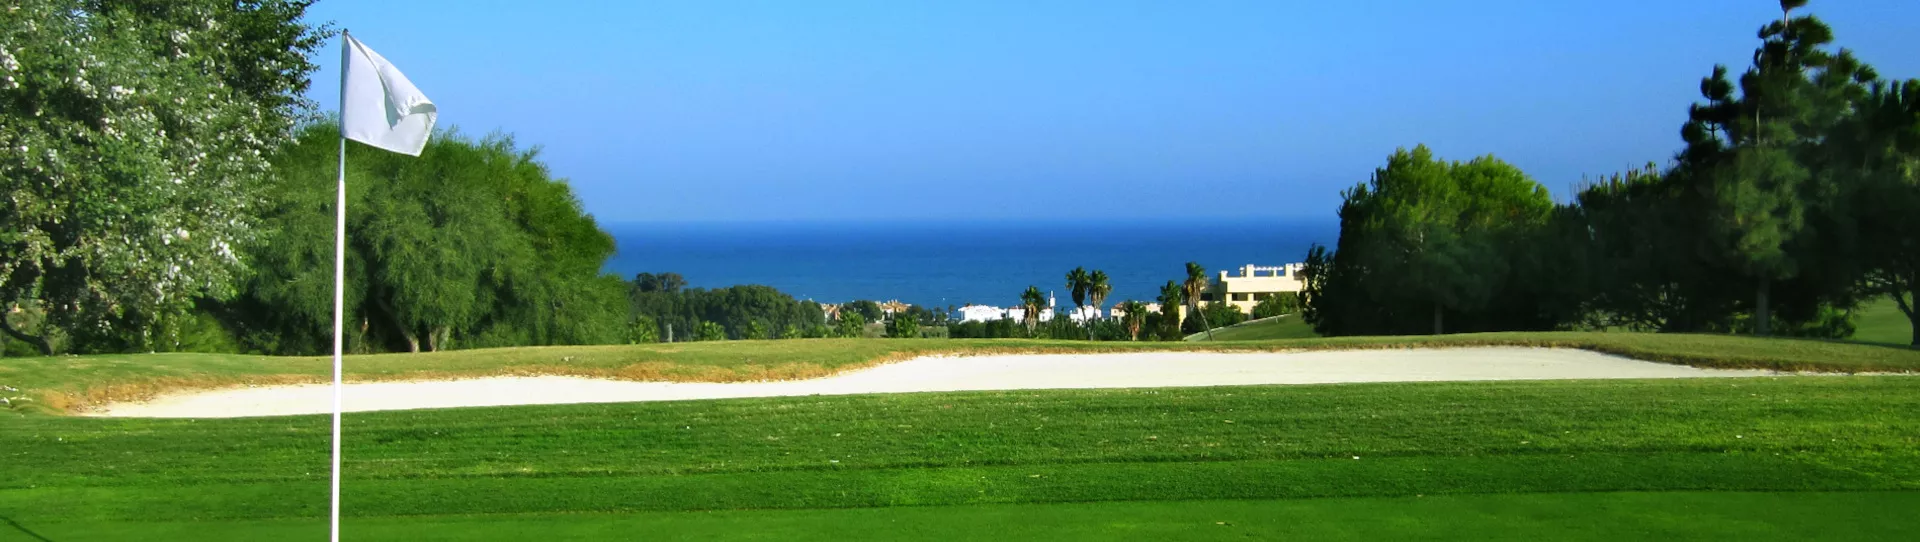 Spain golf courses - Doña Julia Golf Course - Photo 3